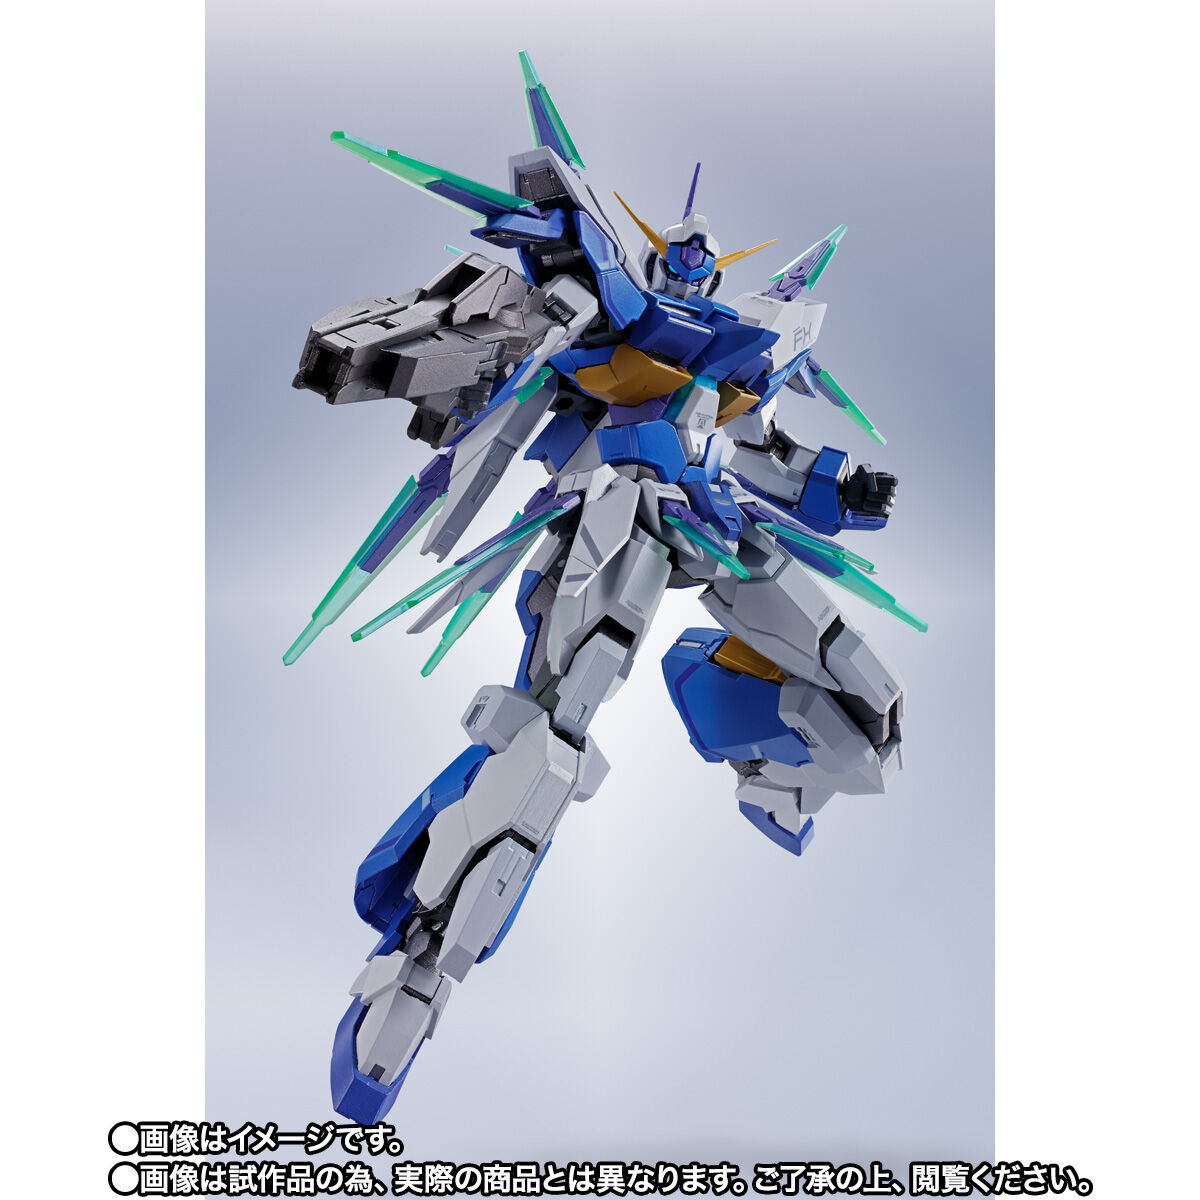 【限定販売】METAL ROBOT魂〈SIDE MS〉『ガンダム AGE-FX』機動戦士ガンダムAGE 可動フィギュア-006